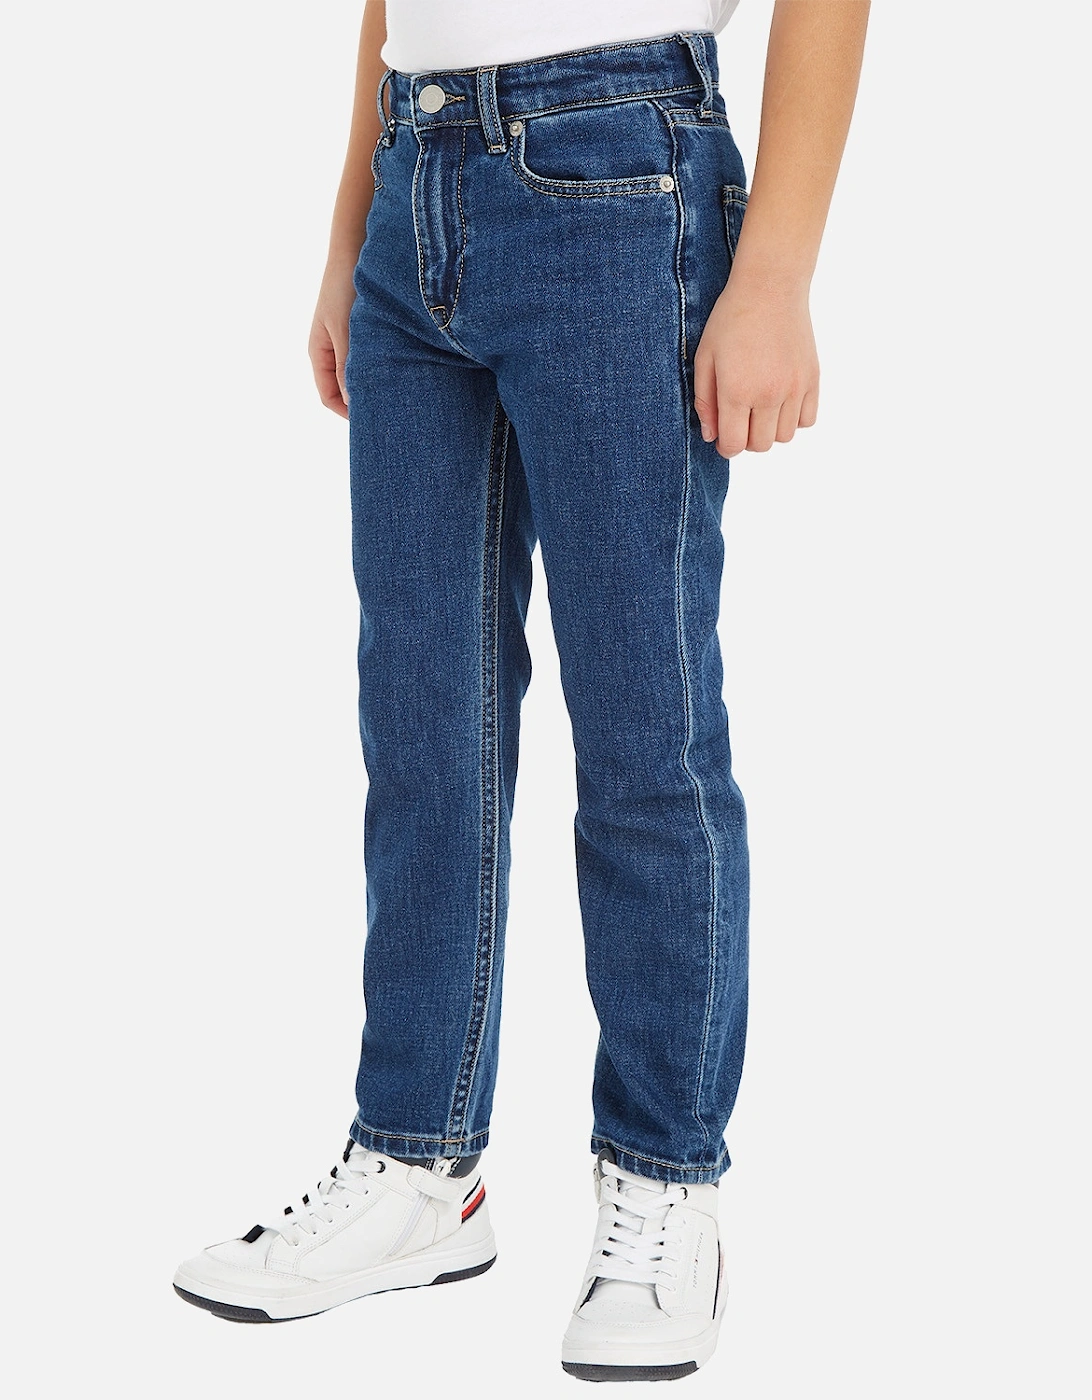 Juniors Clean Wash Denim Jeans (Blue)